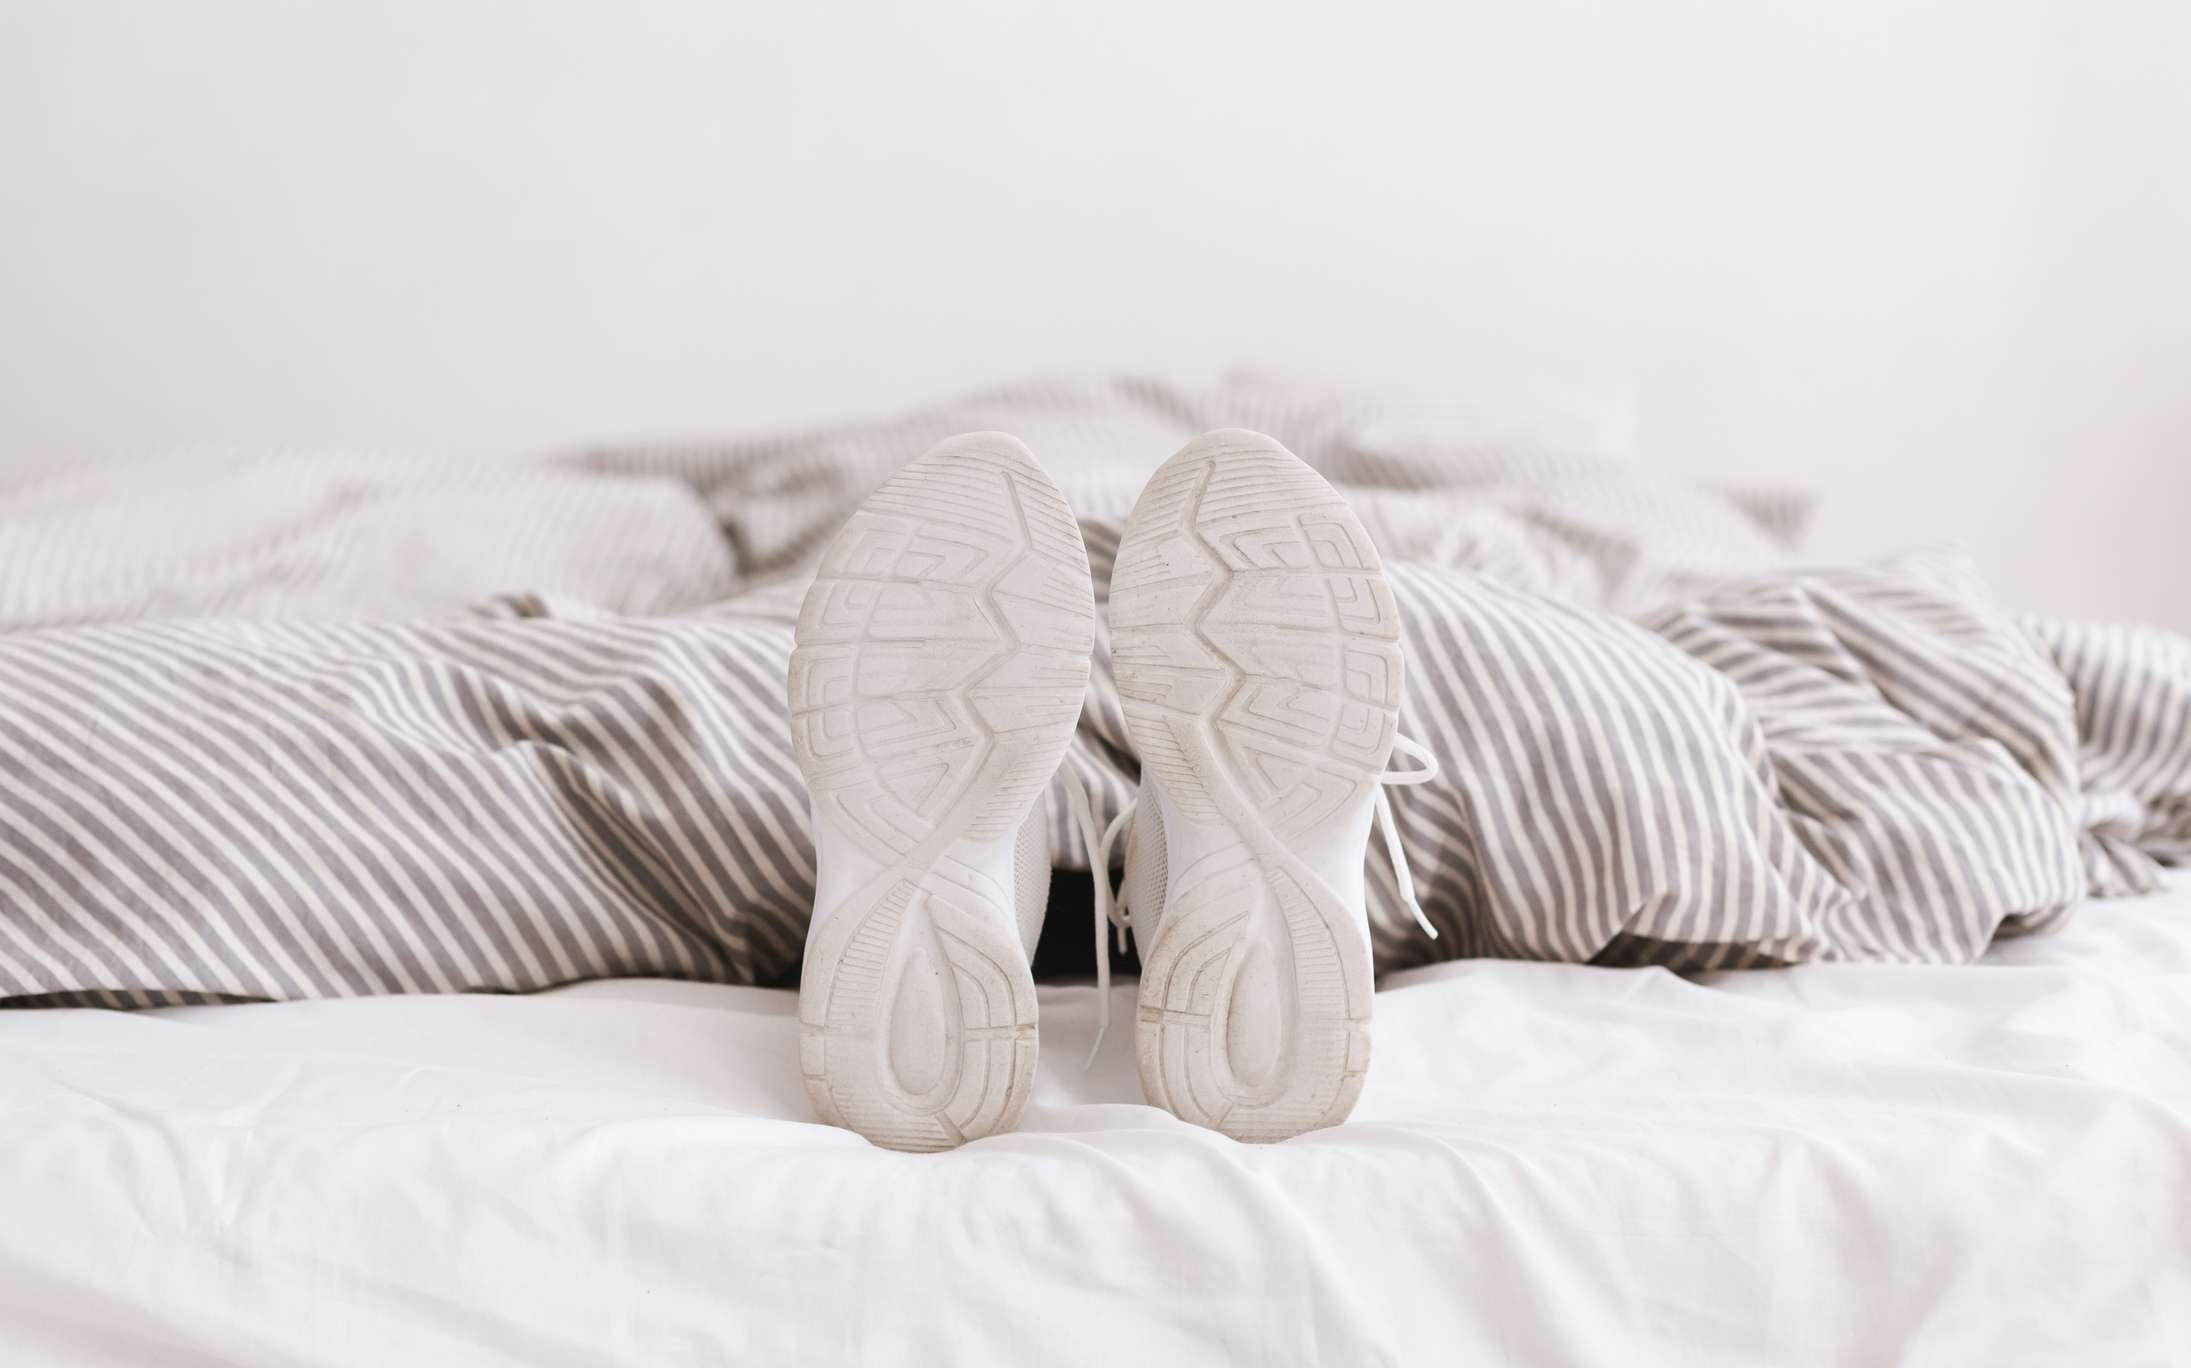 Junge, weibliche Beine in weißen Turnschuhen, am Bett liegend